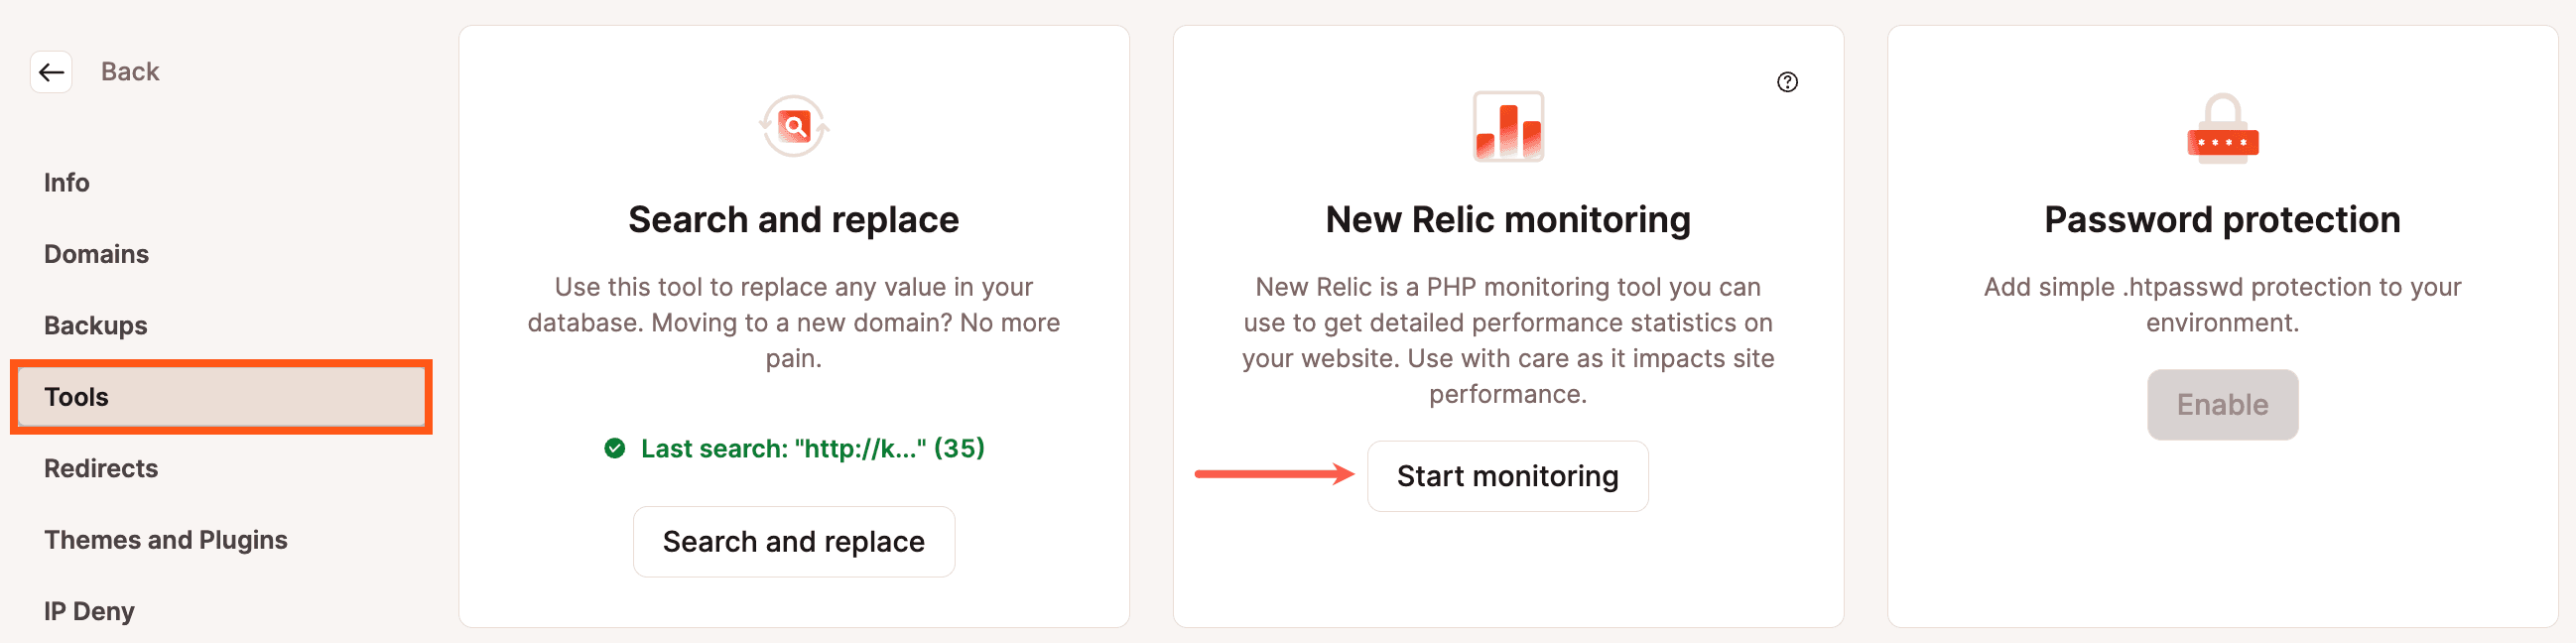 Start New Relic monitoring voor WordPress in MyKinsta.